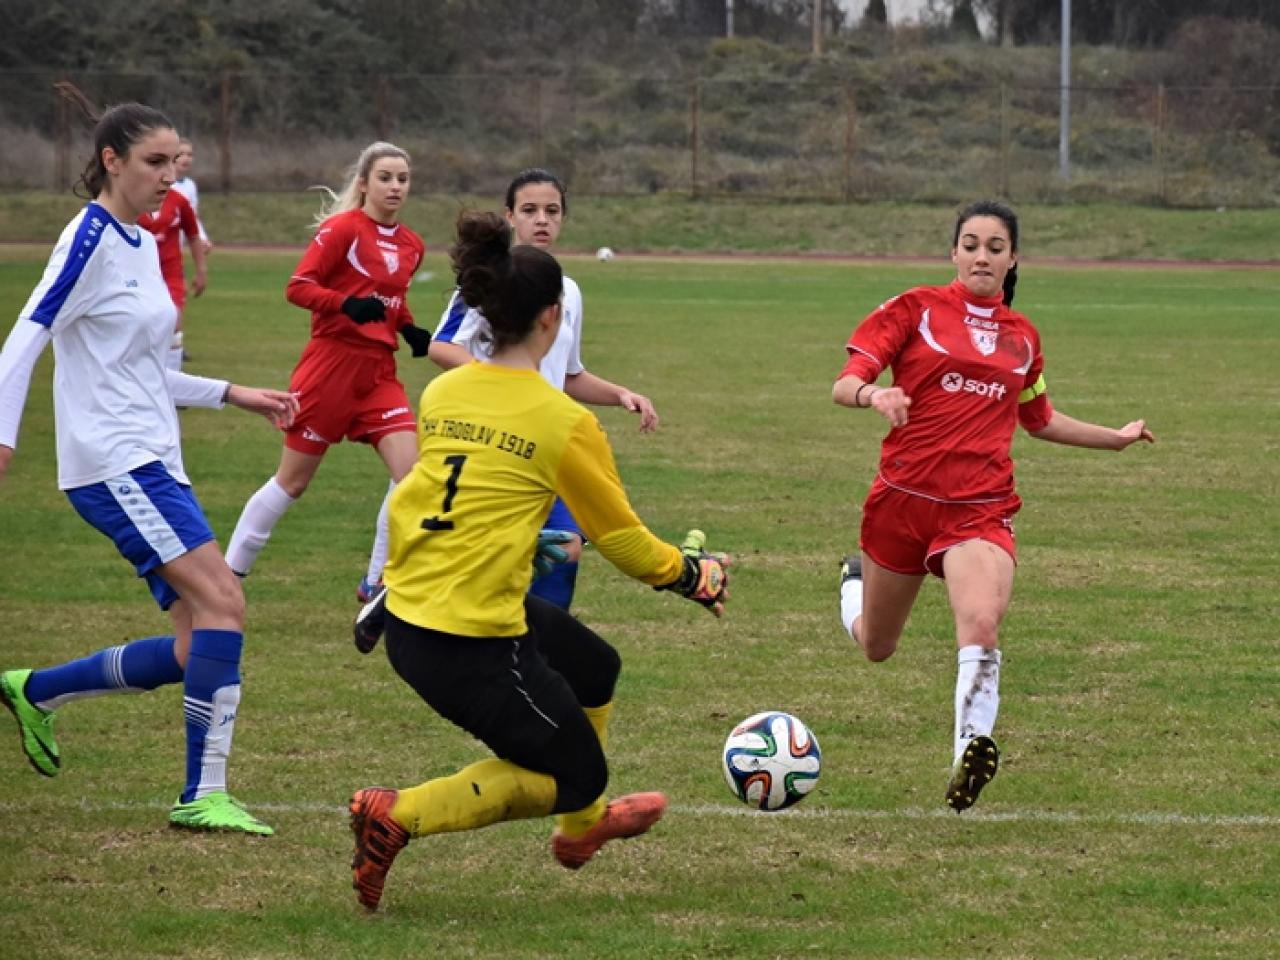 Ladies open Brotnjo 2019 igra se u Čitluku 1. i 2. prosinca - Ženski nogomet: Ladies open Brotnjo 2019 igra se u Čitluku 1. i 2. prosinca